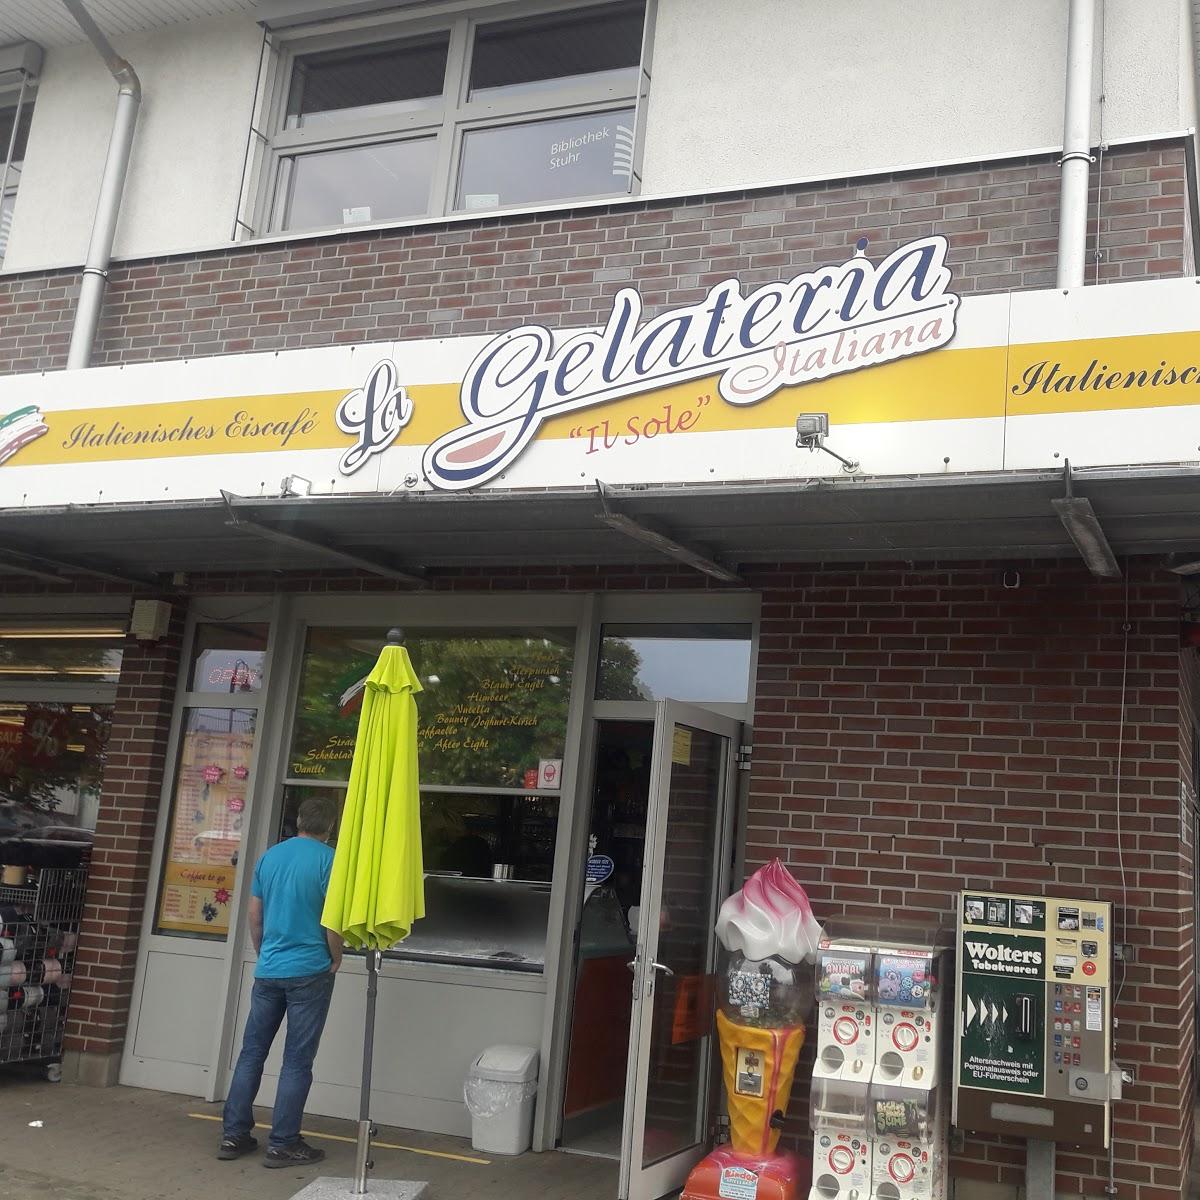 Restaurant "La Gelateria" in Stuhr